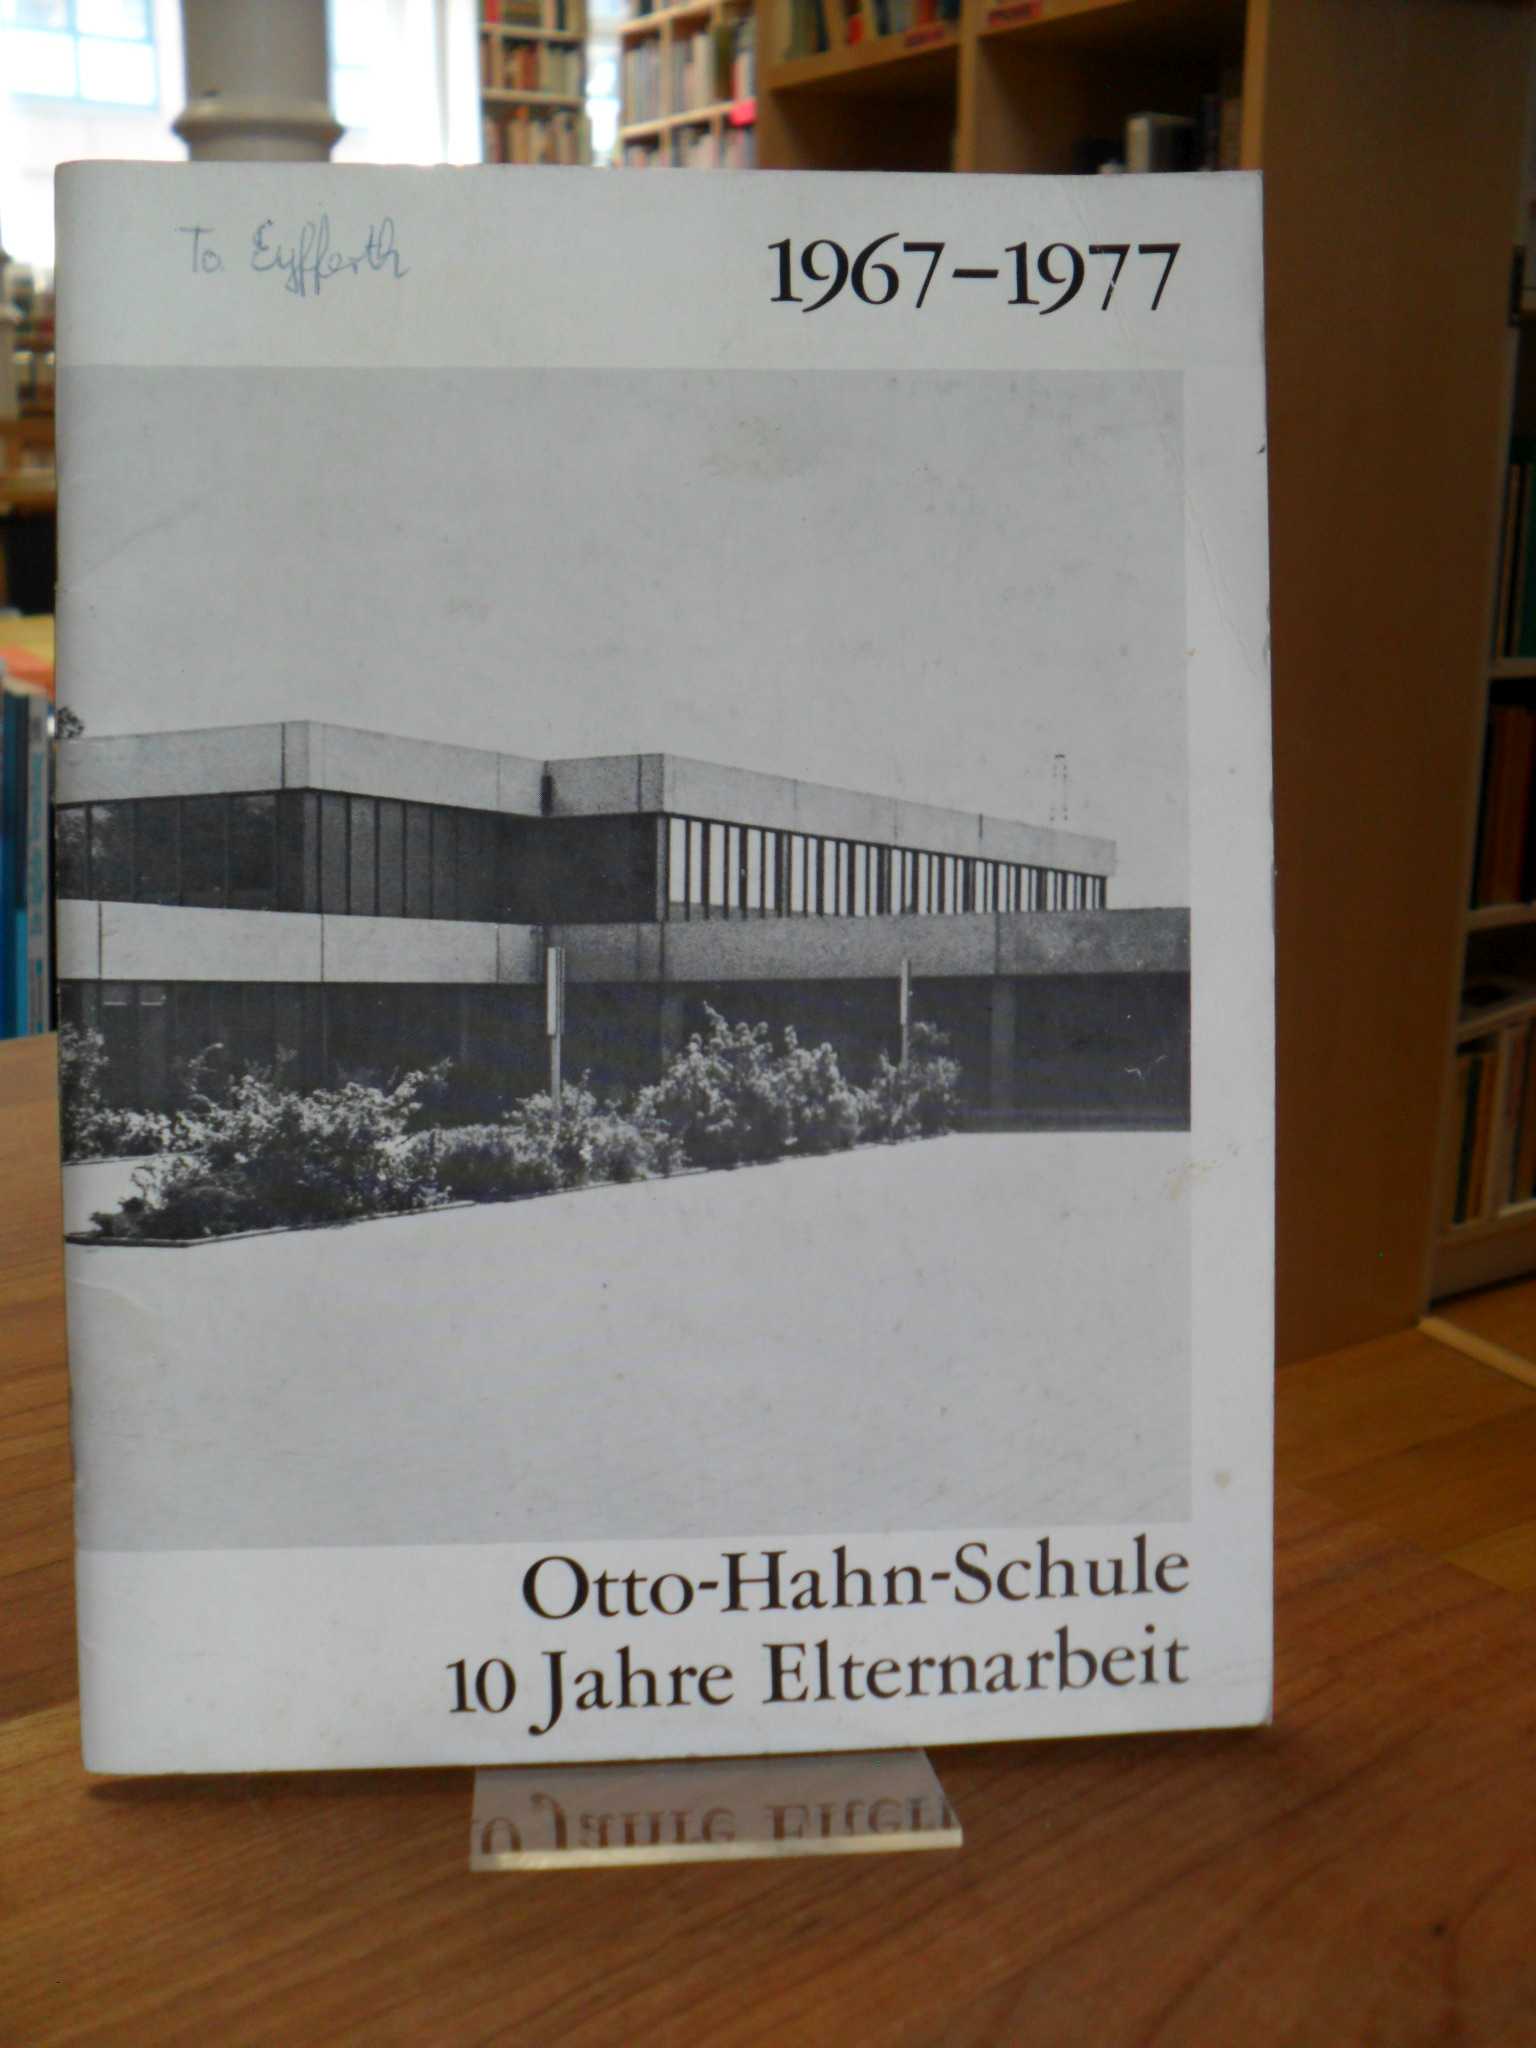 Hanau / Otto-Hahn-Schule, 1967-1977 – Otto-Hahn-Schule – 10 Jahre Elternarbeit,